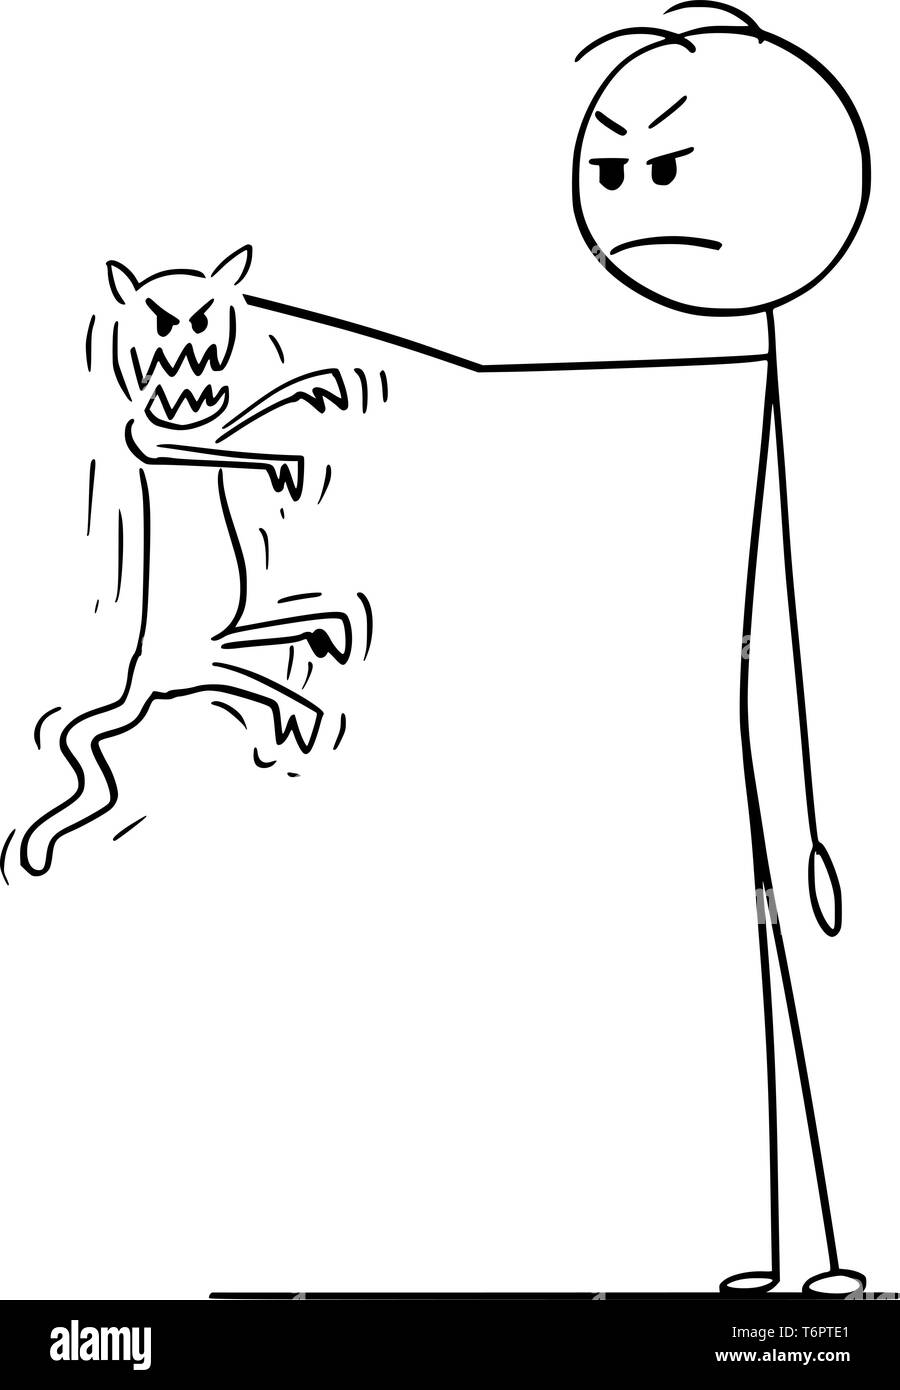 Cartoon Strichmännchen Zeichnen konzeptionelle Darstellung der Mann hält in der Hand wütend und aggressiv Katze versucht zu beißen und Kratzen. Stock Vektor